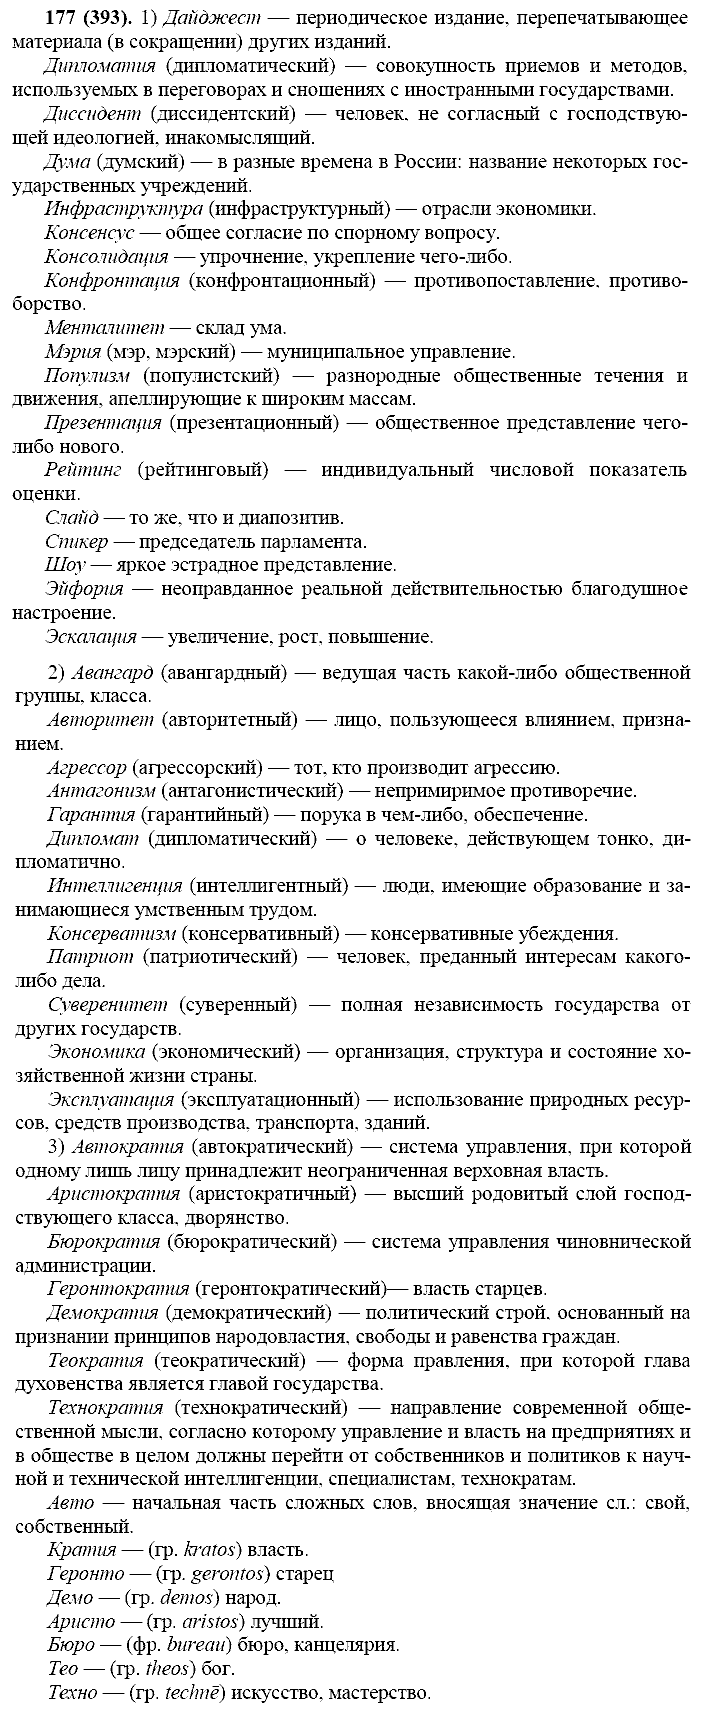 Русский язык, 11 класс, Власенков, Рыбченков, 2009-2014, задание: 177 (393)